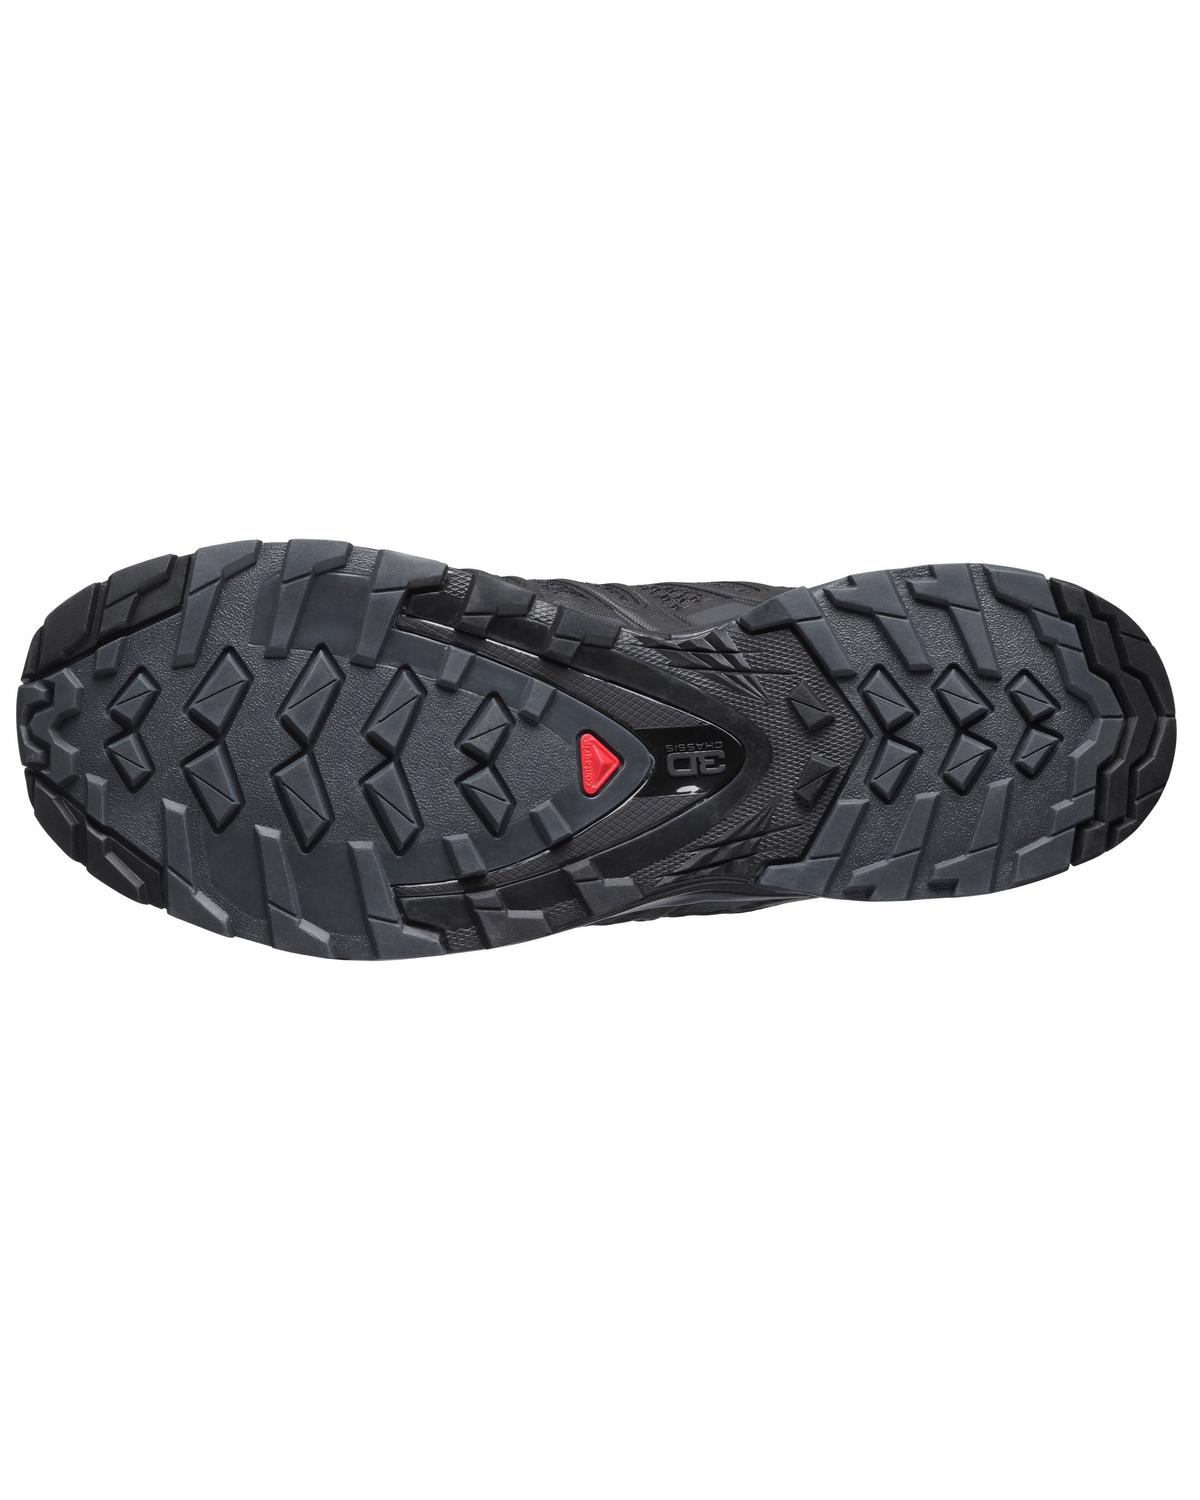 Salomon Women’s XA Pro 3D V8 Trail Running Shoes -  Black